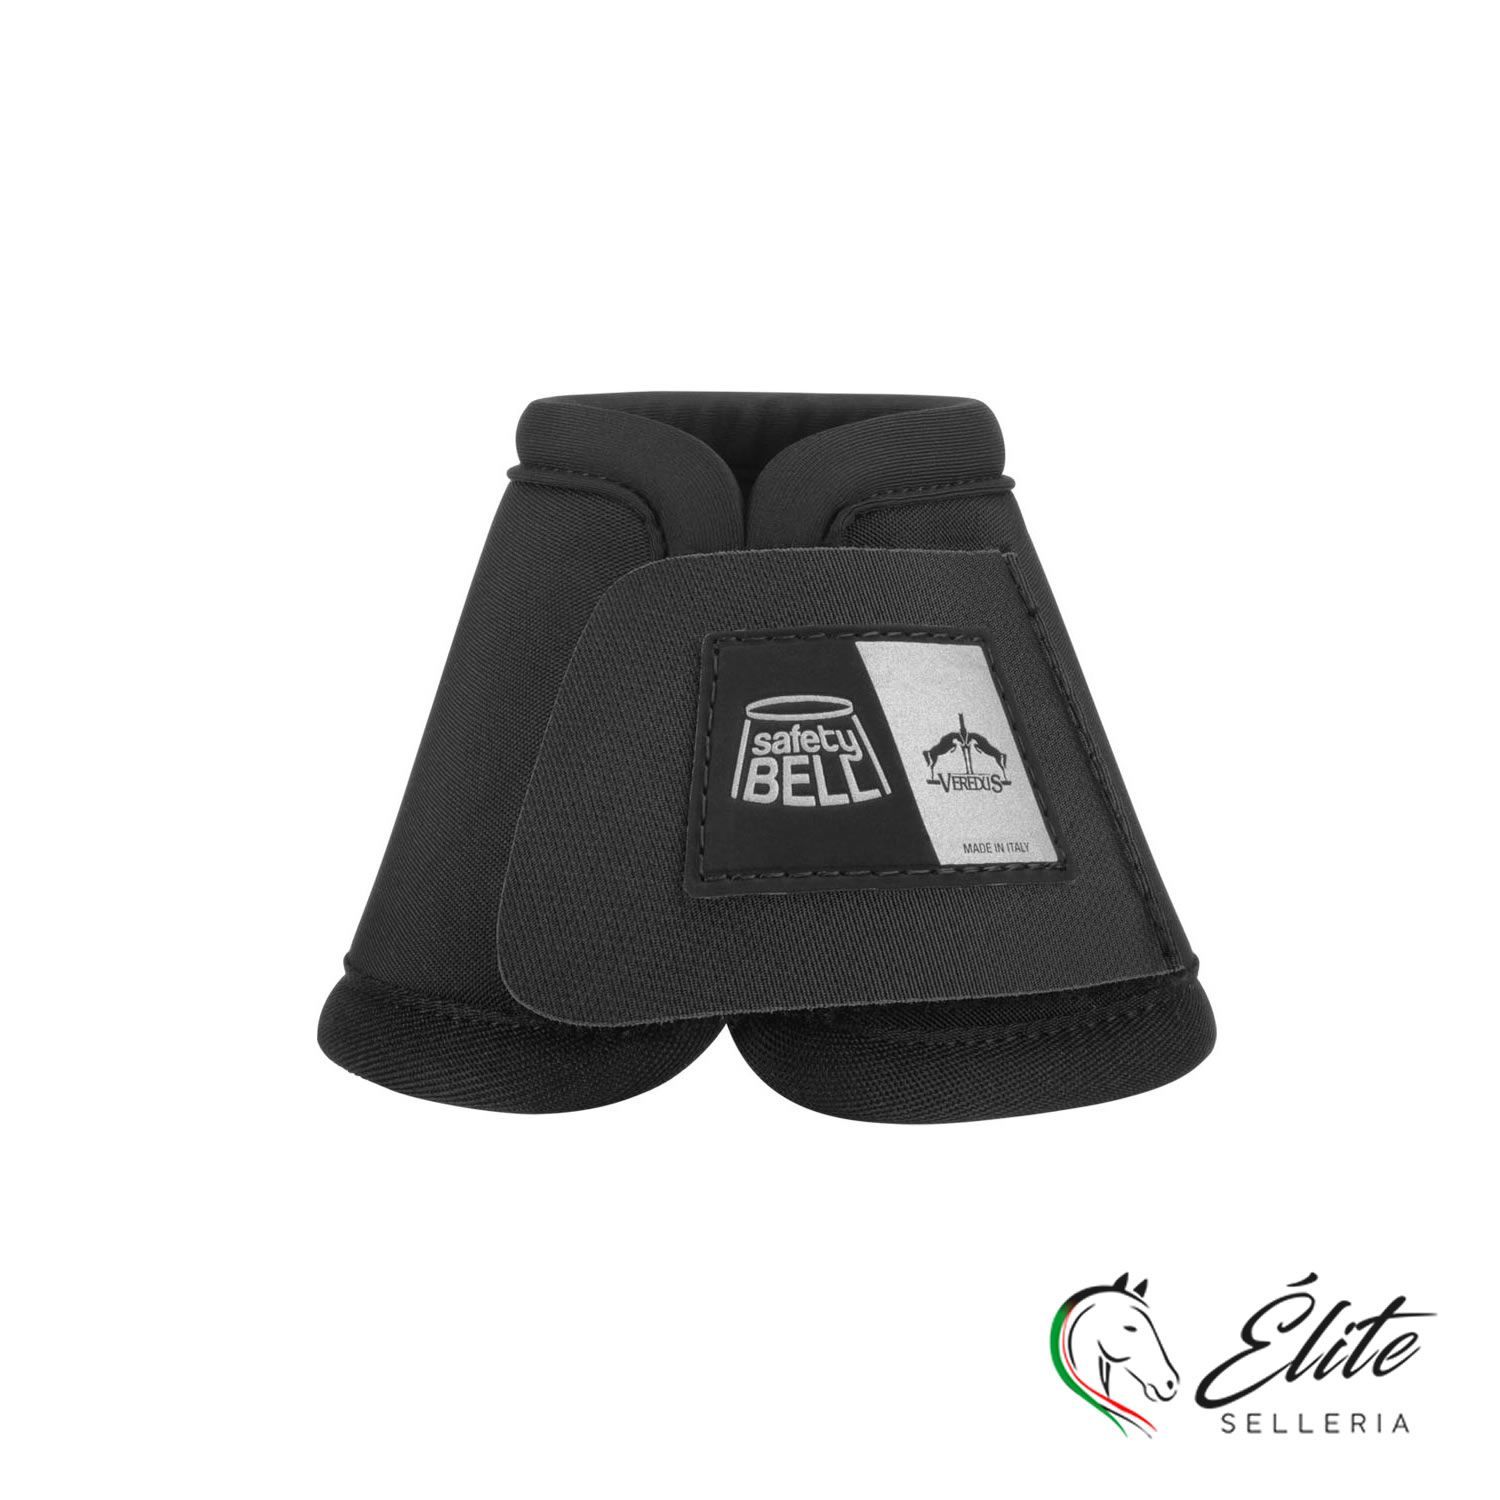 Vendita online Safety-Bell Light Black - Selleria Élite del cavallo - Palermo - Sicilia- Italia